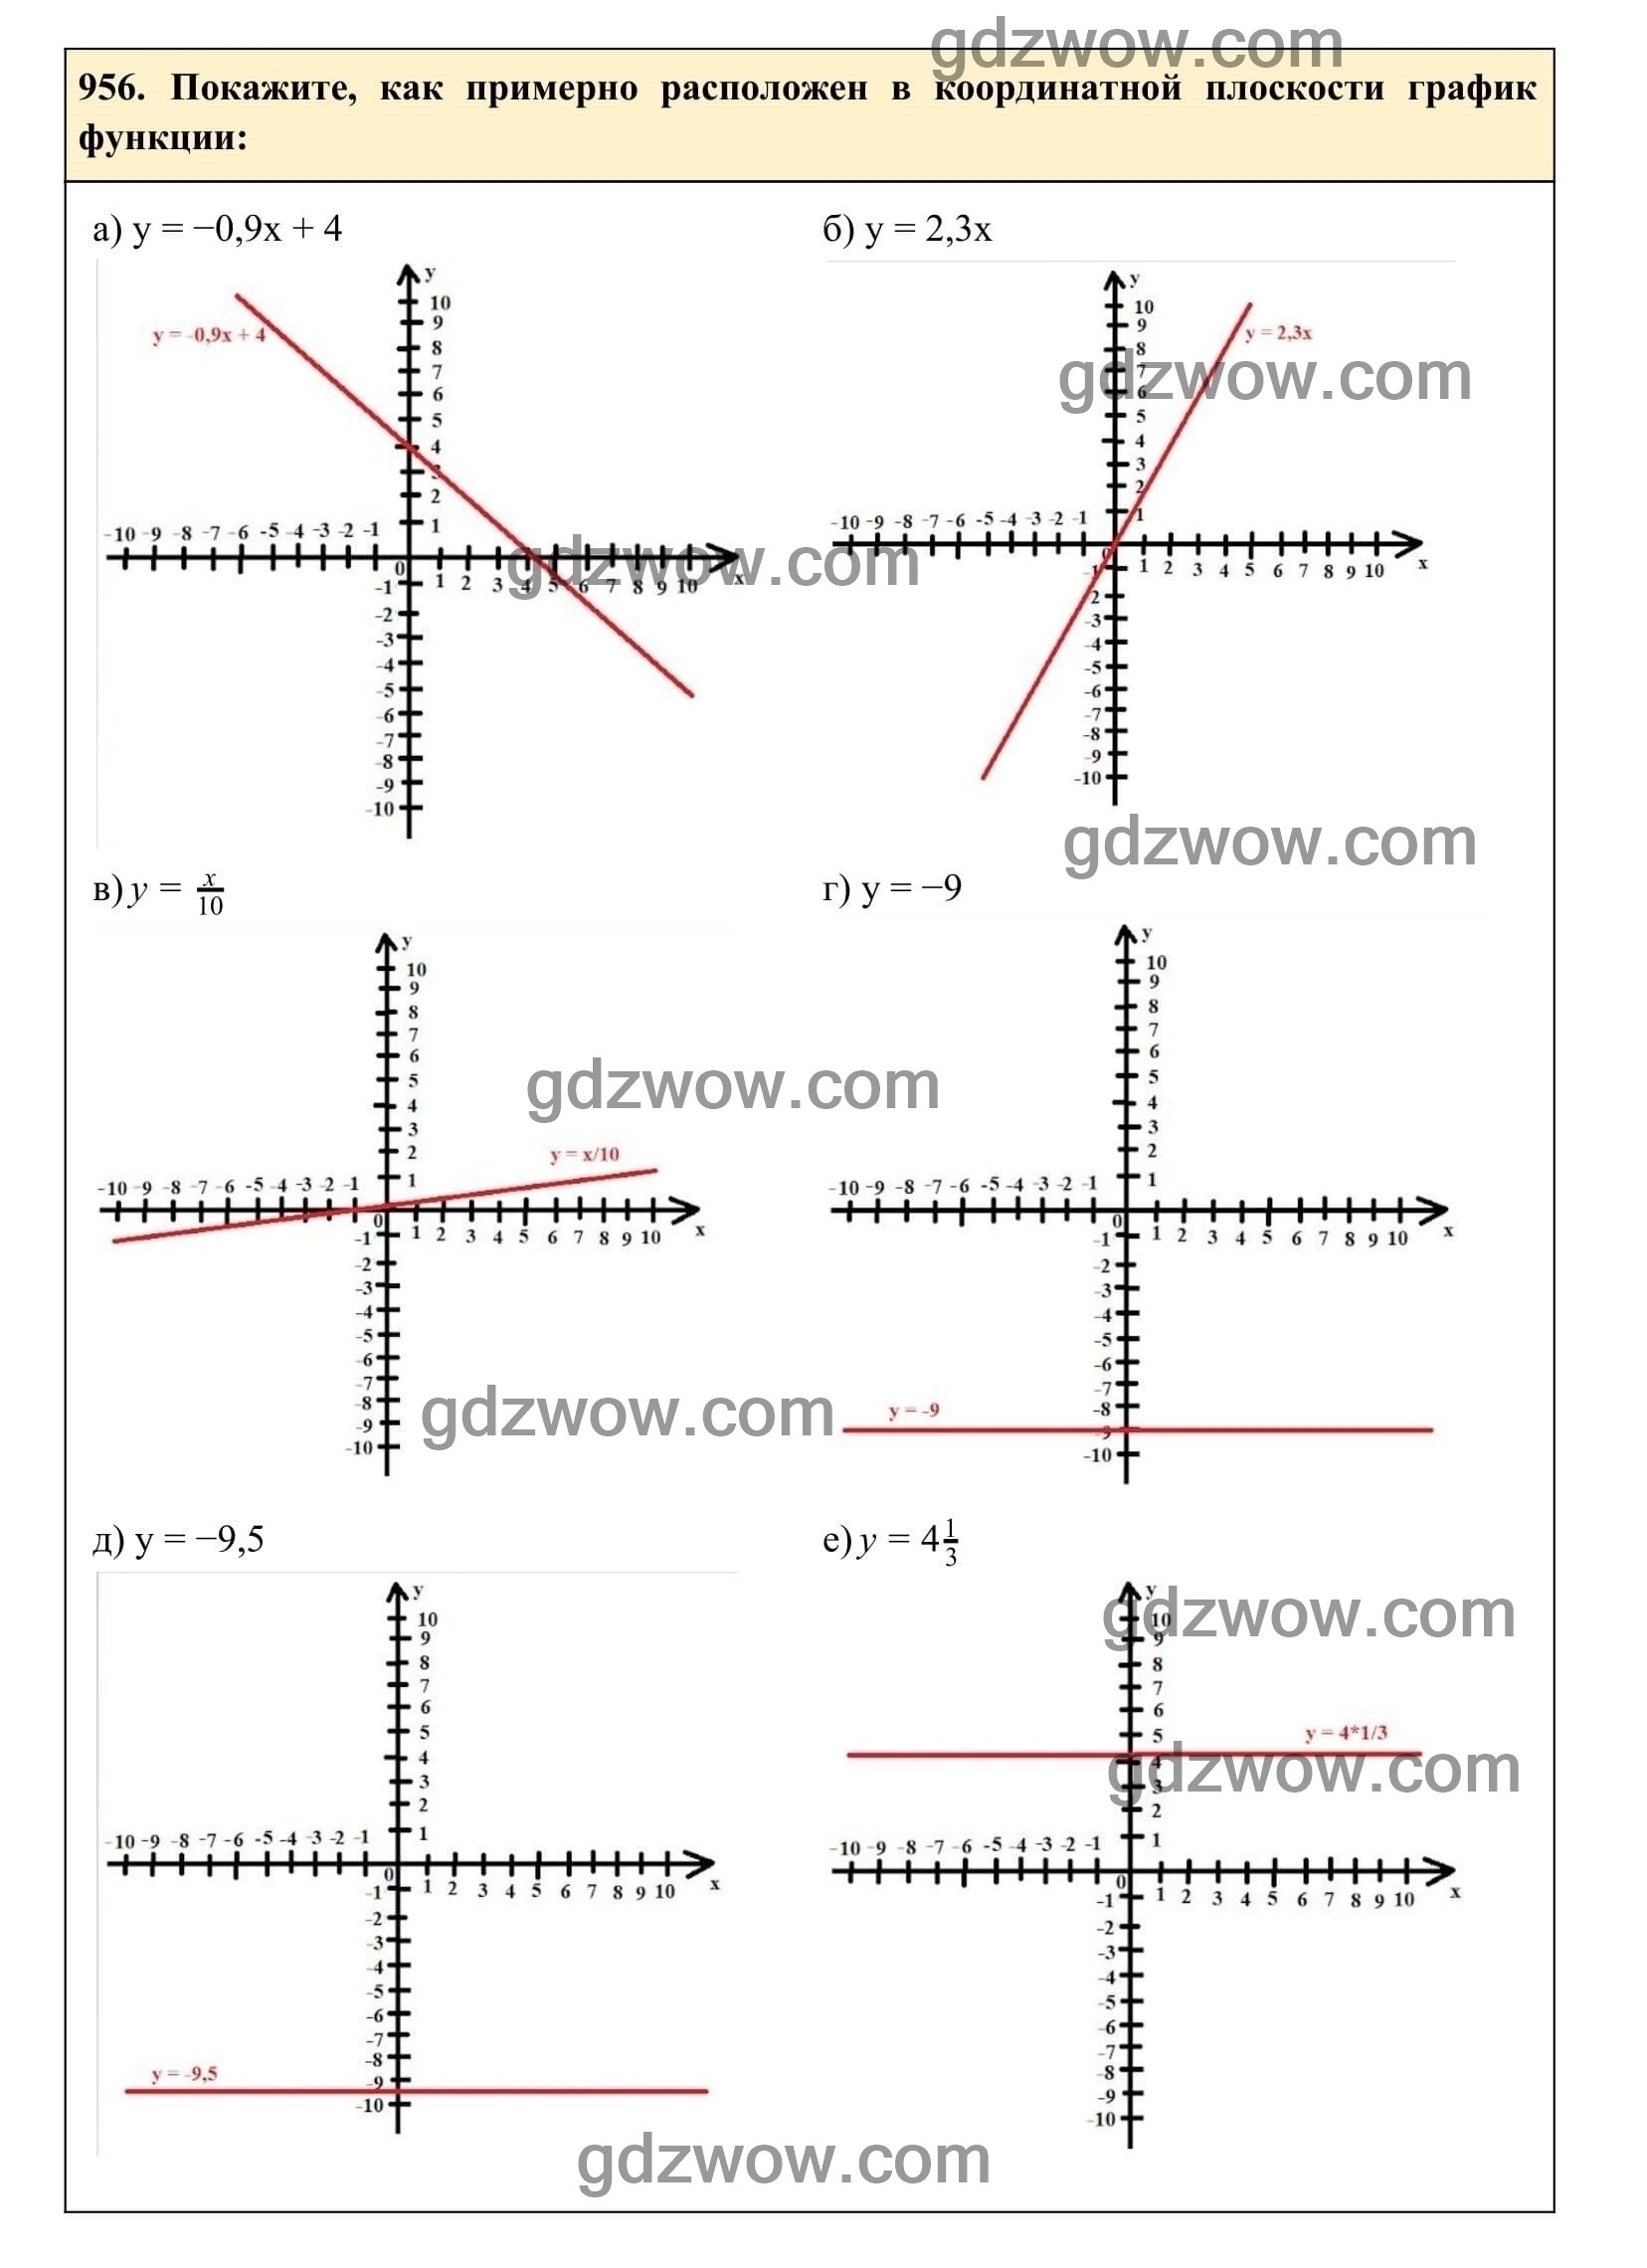 Упражнение 956 - ГДЗ по Алгебре 7 класс Учебник Макарычев (решебник) - GDZwow